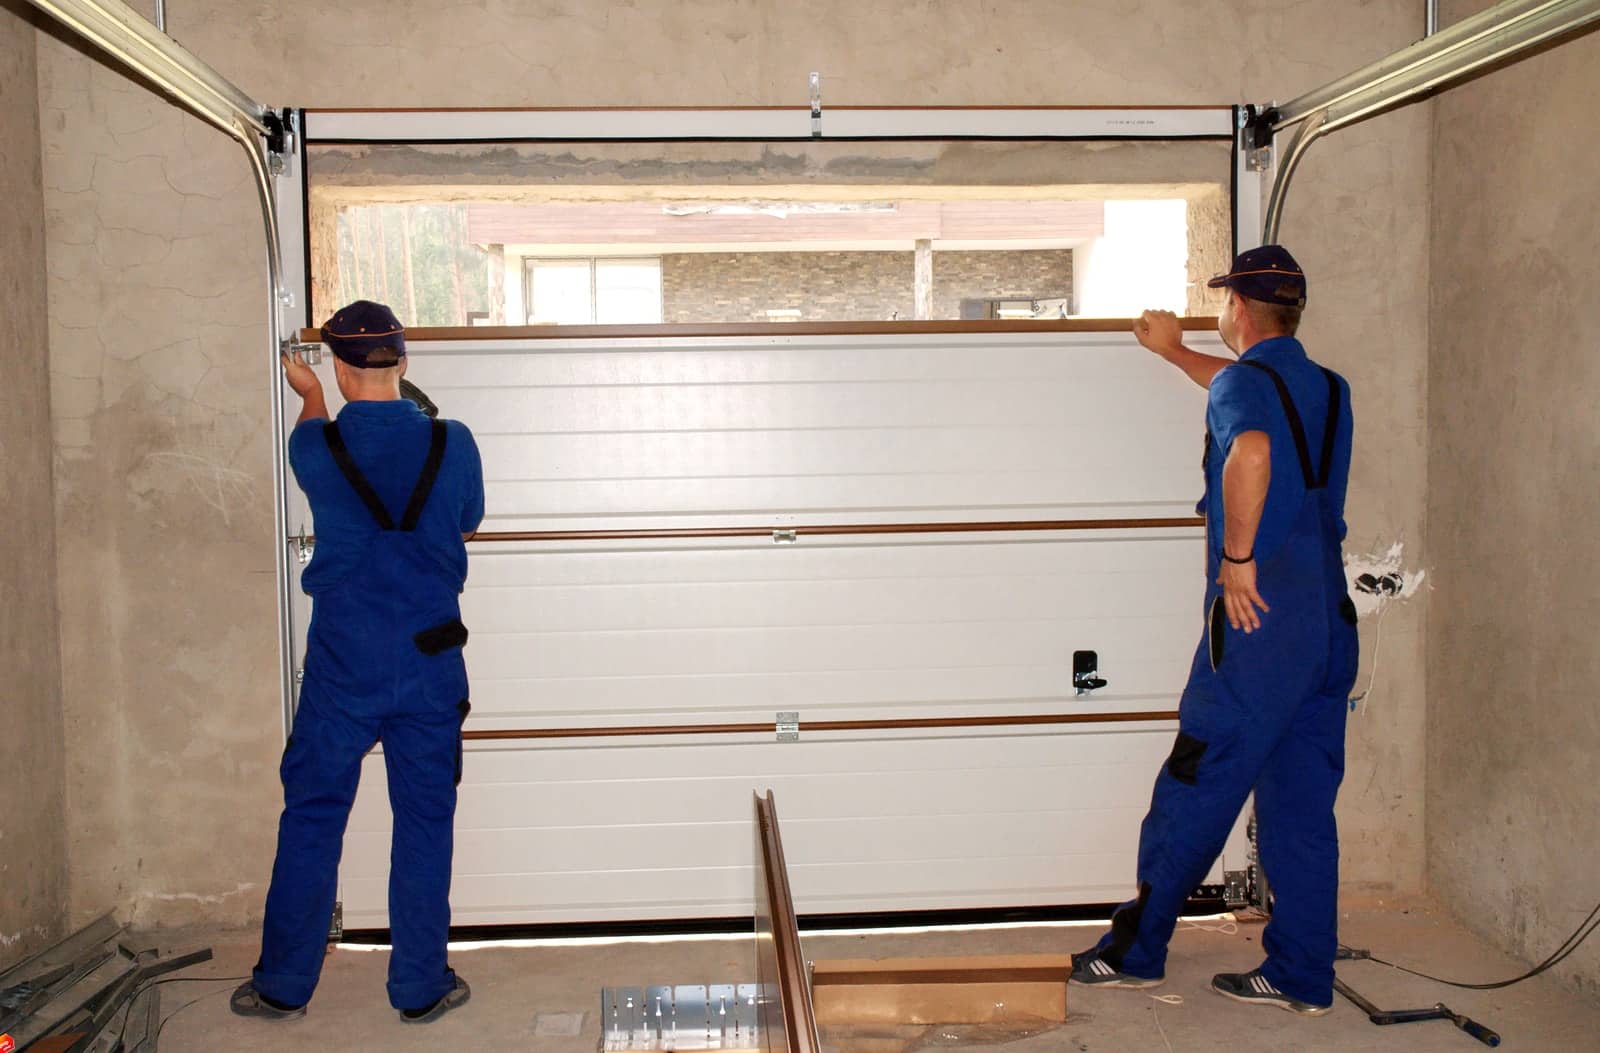 Garage Door Repair Typically Cost, Garage Door Service Fee